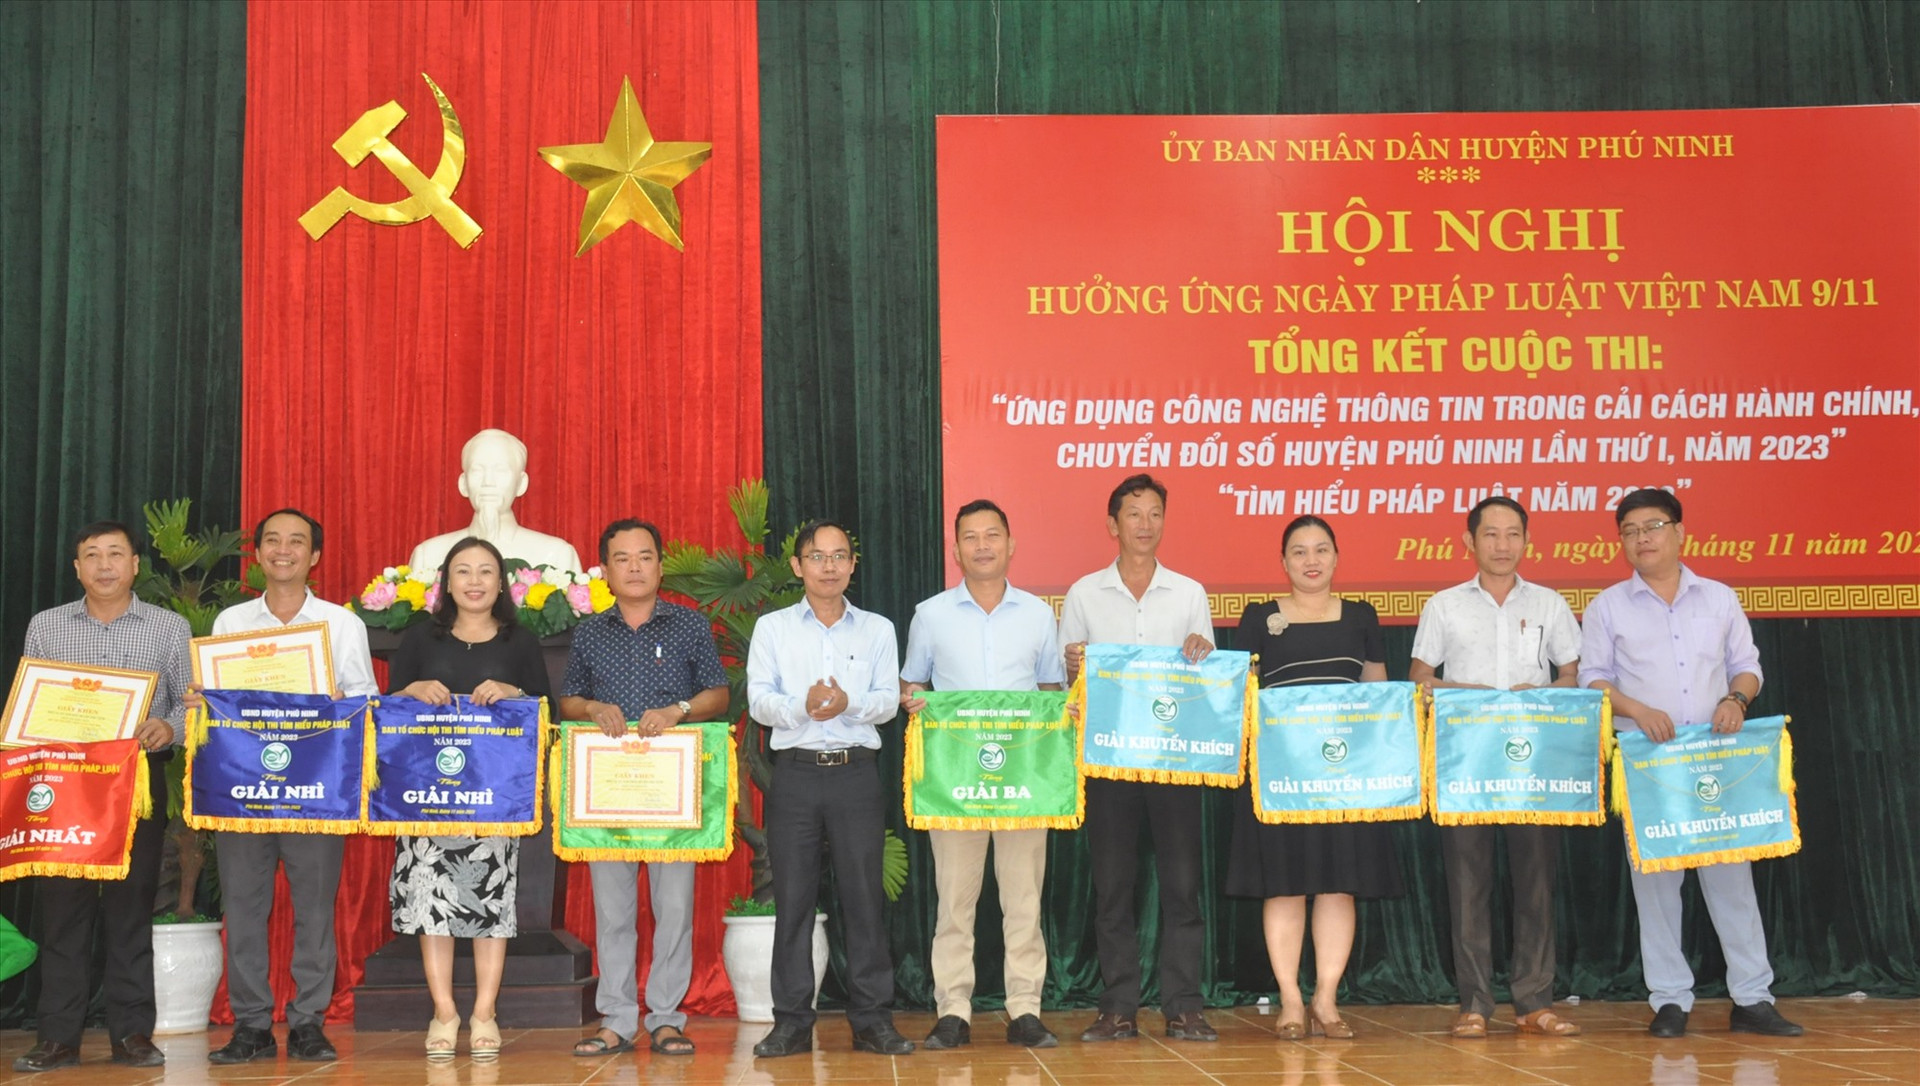 Lãnh đạo huyện Phú Ninh trao giải cho các đơn vị tham gia hội thi “Tìm hiểu pháp luật năm 2023“. Ảnh: N.Đ